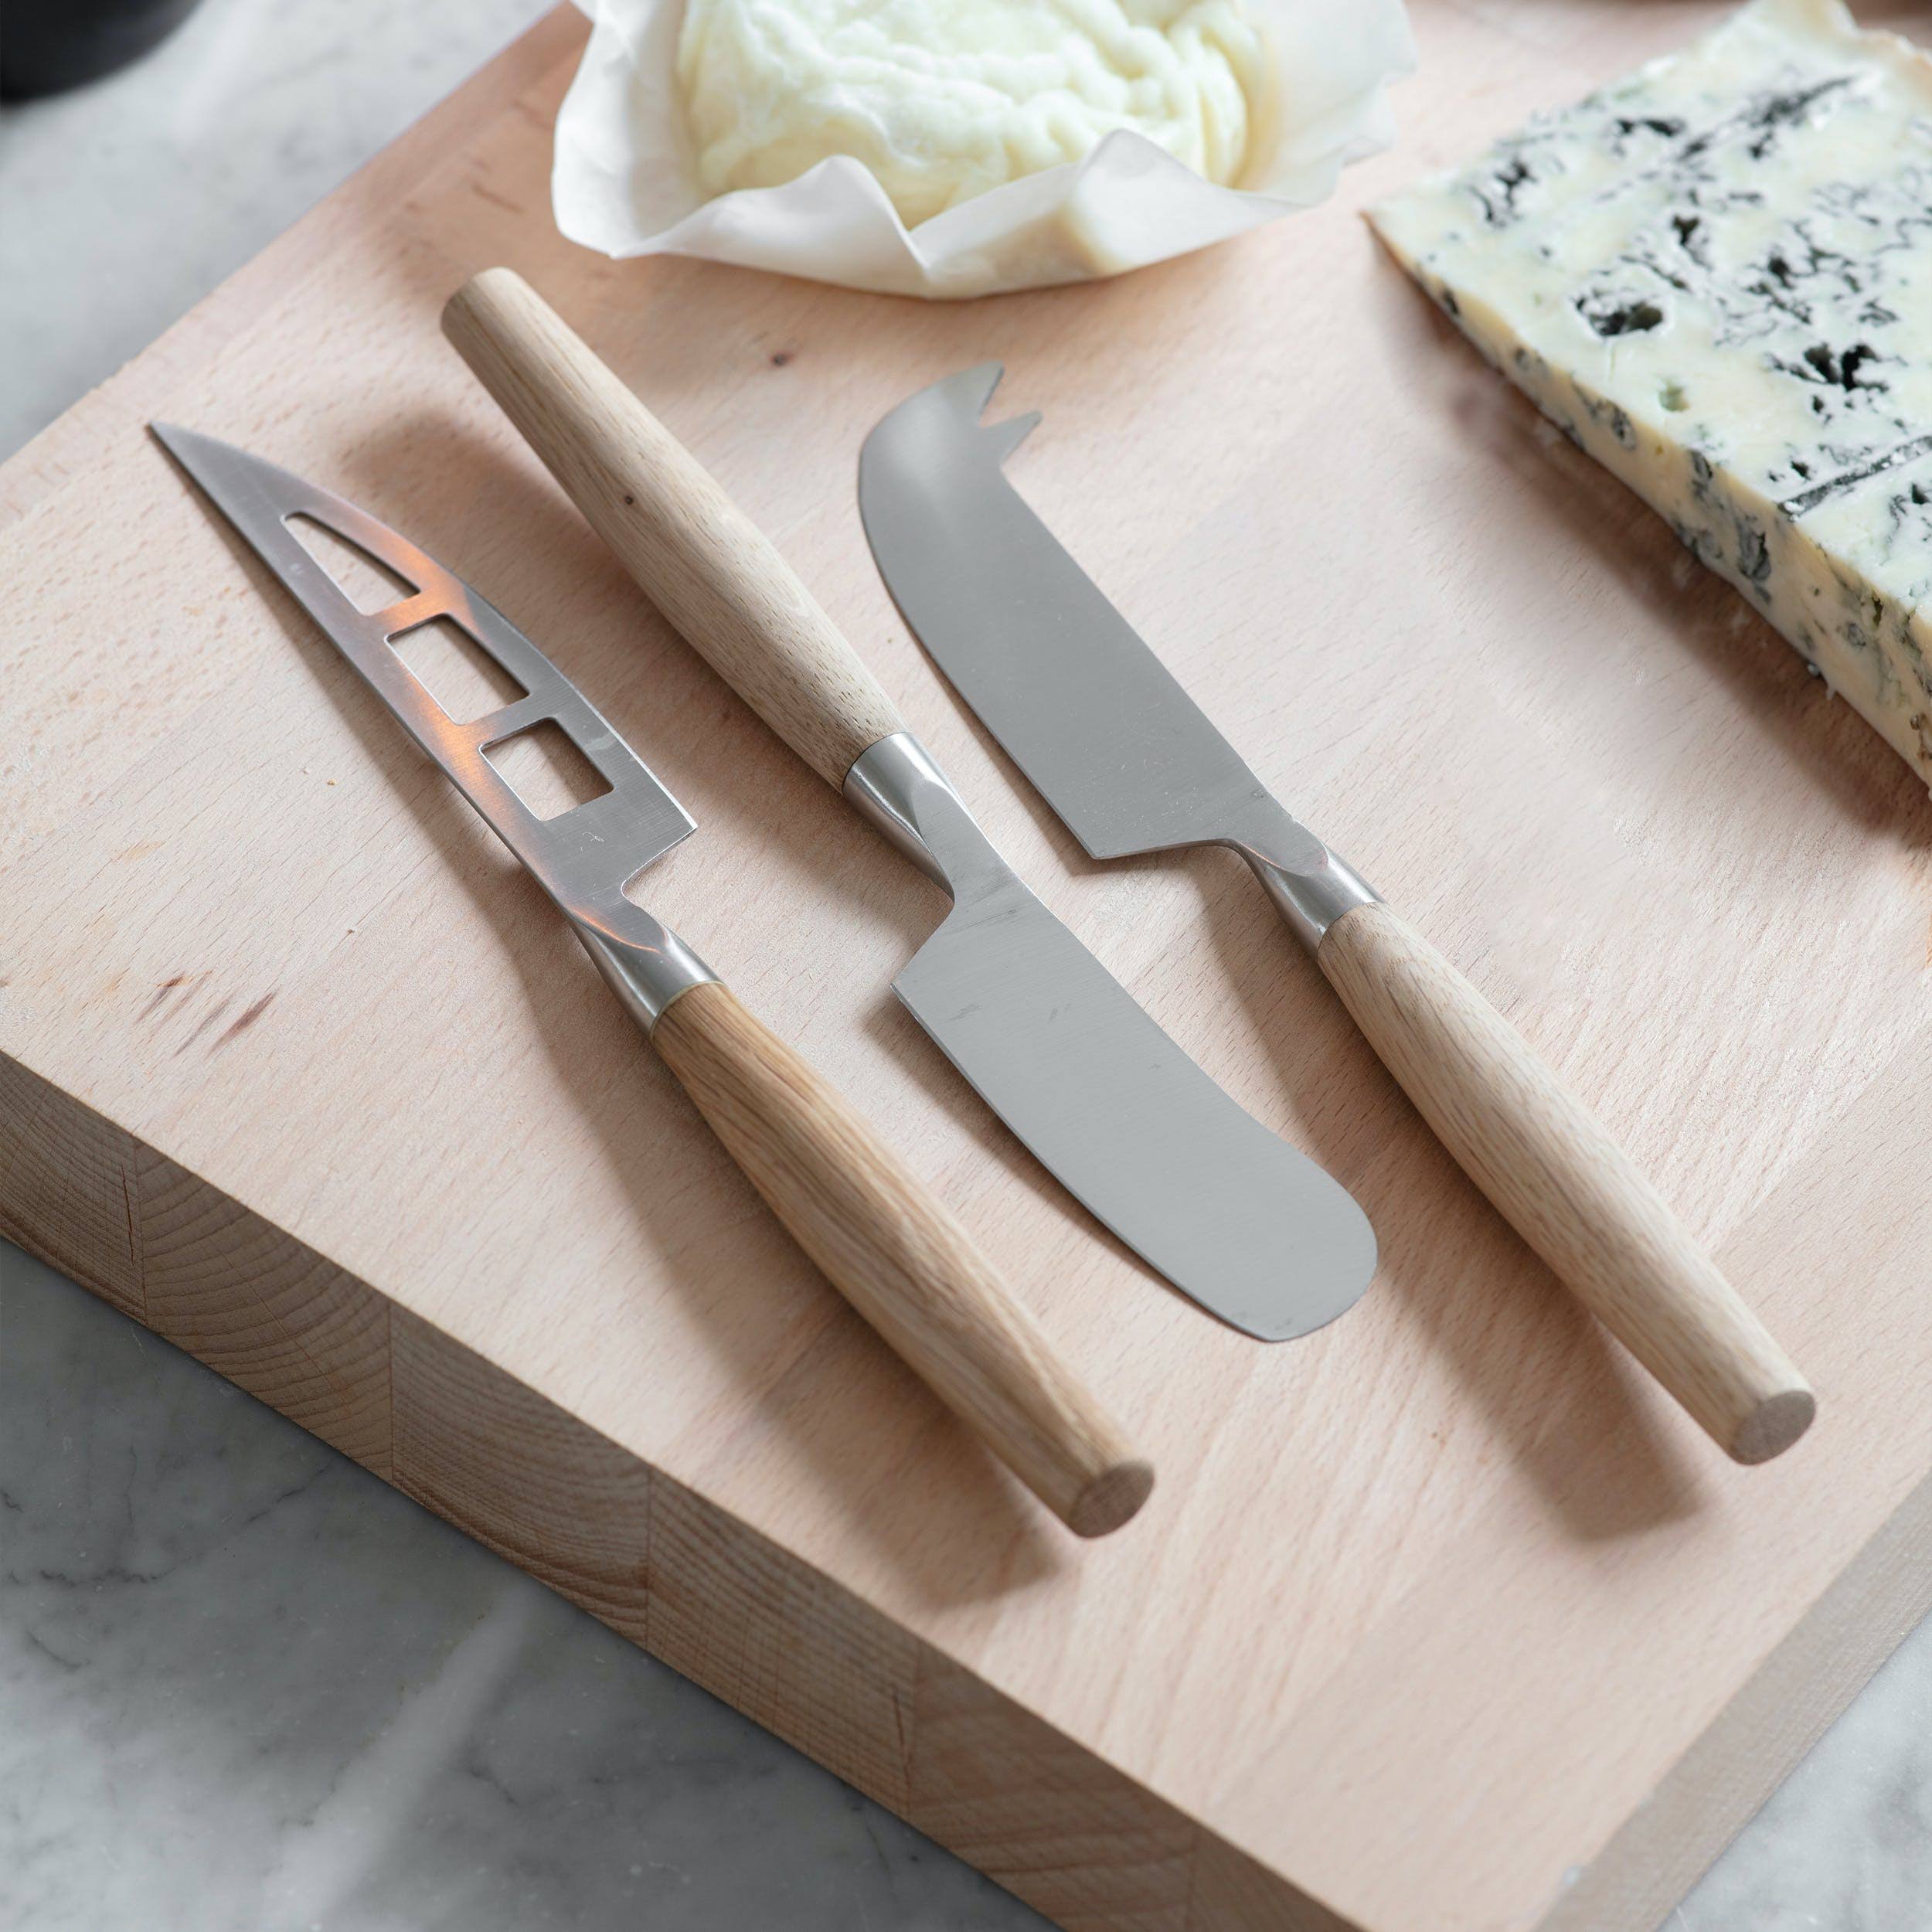 Garden Trading Set of 3 Cheese Knives | Steel & Oak